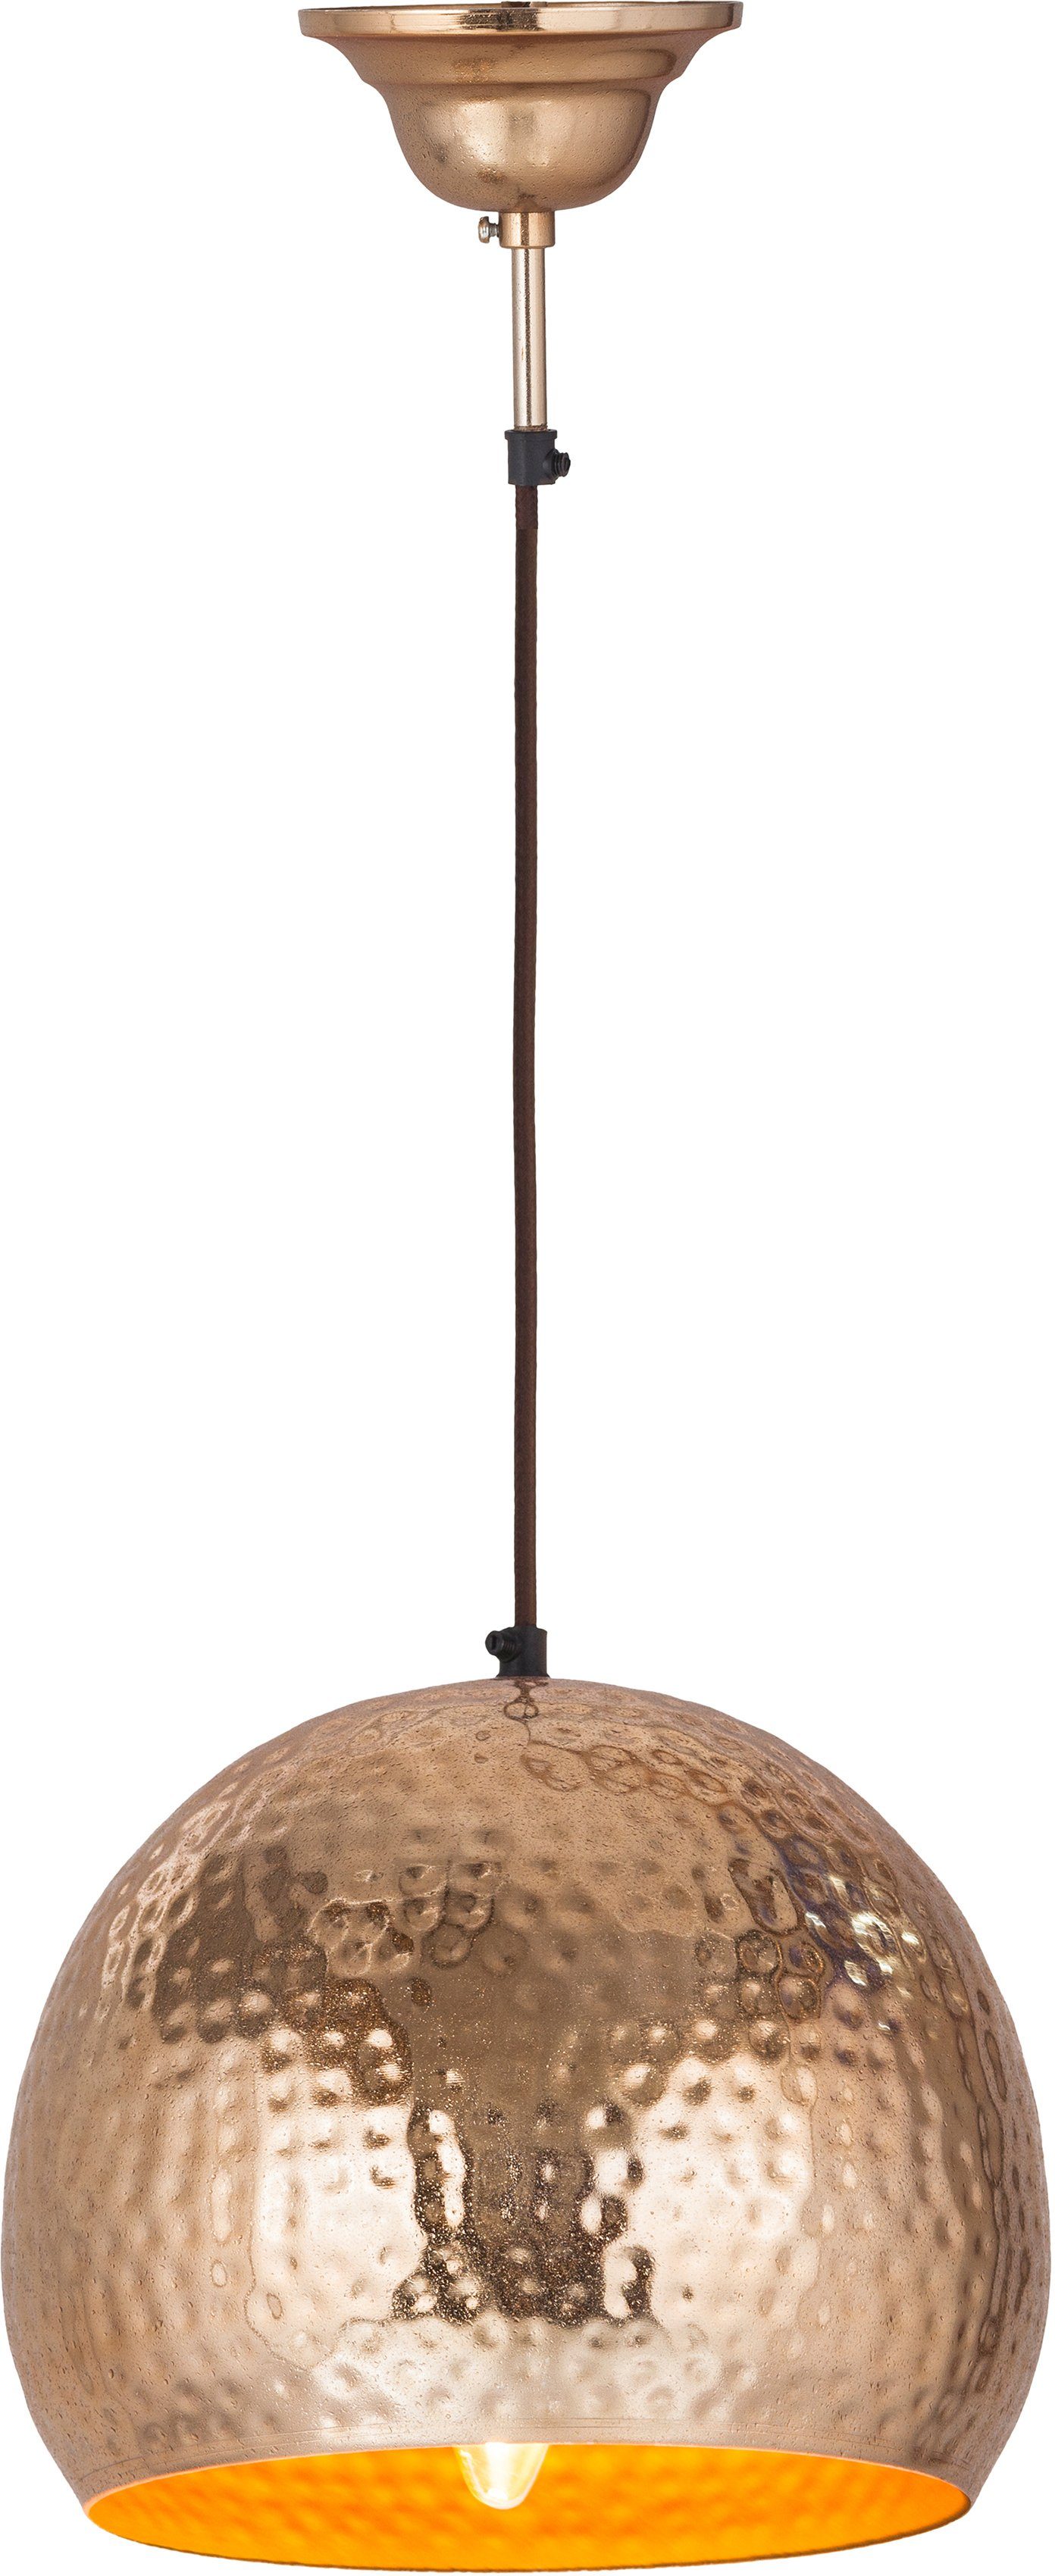 Kayoom Hängeleuchte Fabricia, ohne Leuchtmittel, in Glockenform Metall-Hängeleuchte im Industrial-Style, handgefertigt